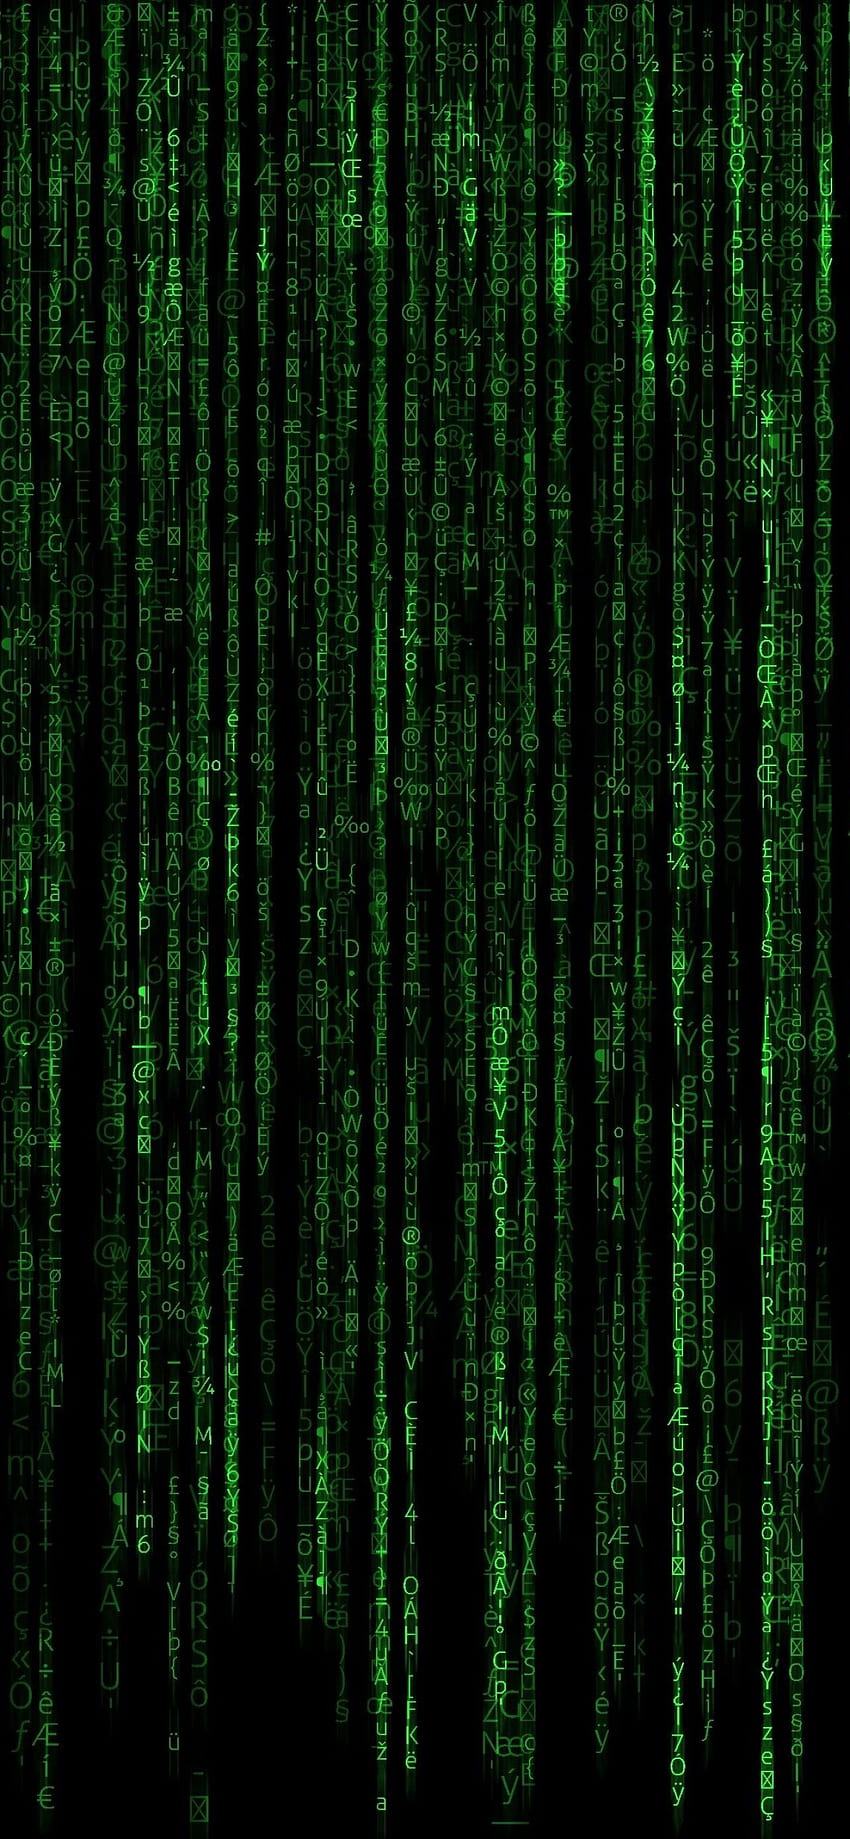 Green Code: Những ký tự và mã hexa xanh lá cây làm nền tường và màn hình của bạn trông rất độc đáo và hiện đại. Bạn sẽ cảm nhận được sự tươi mới và thanh thoát khi sử dụng chủ đề này trên thiết bị của mình. Hãy thưởng thức và đắm chìm vào sự khác biệt mà Green Code mang lại.